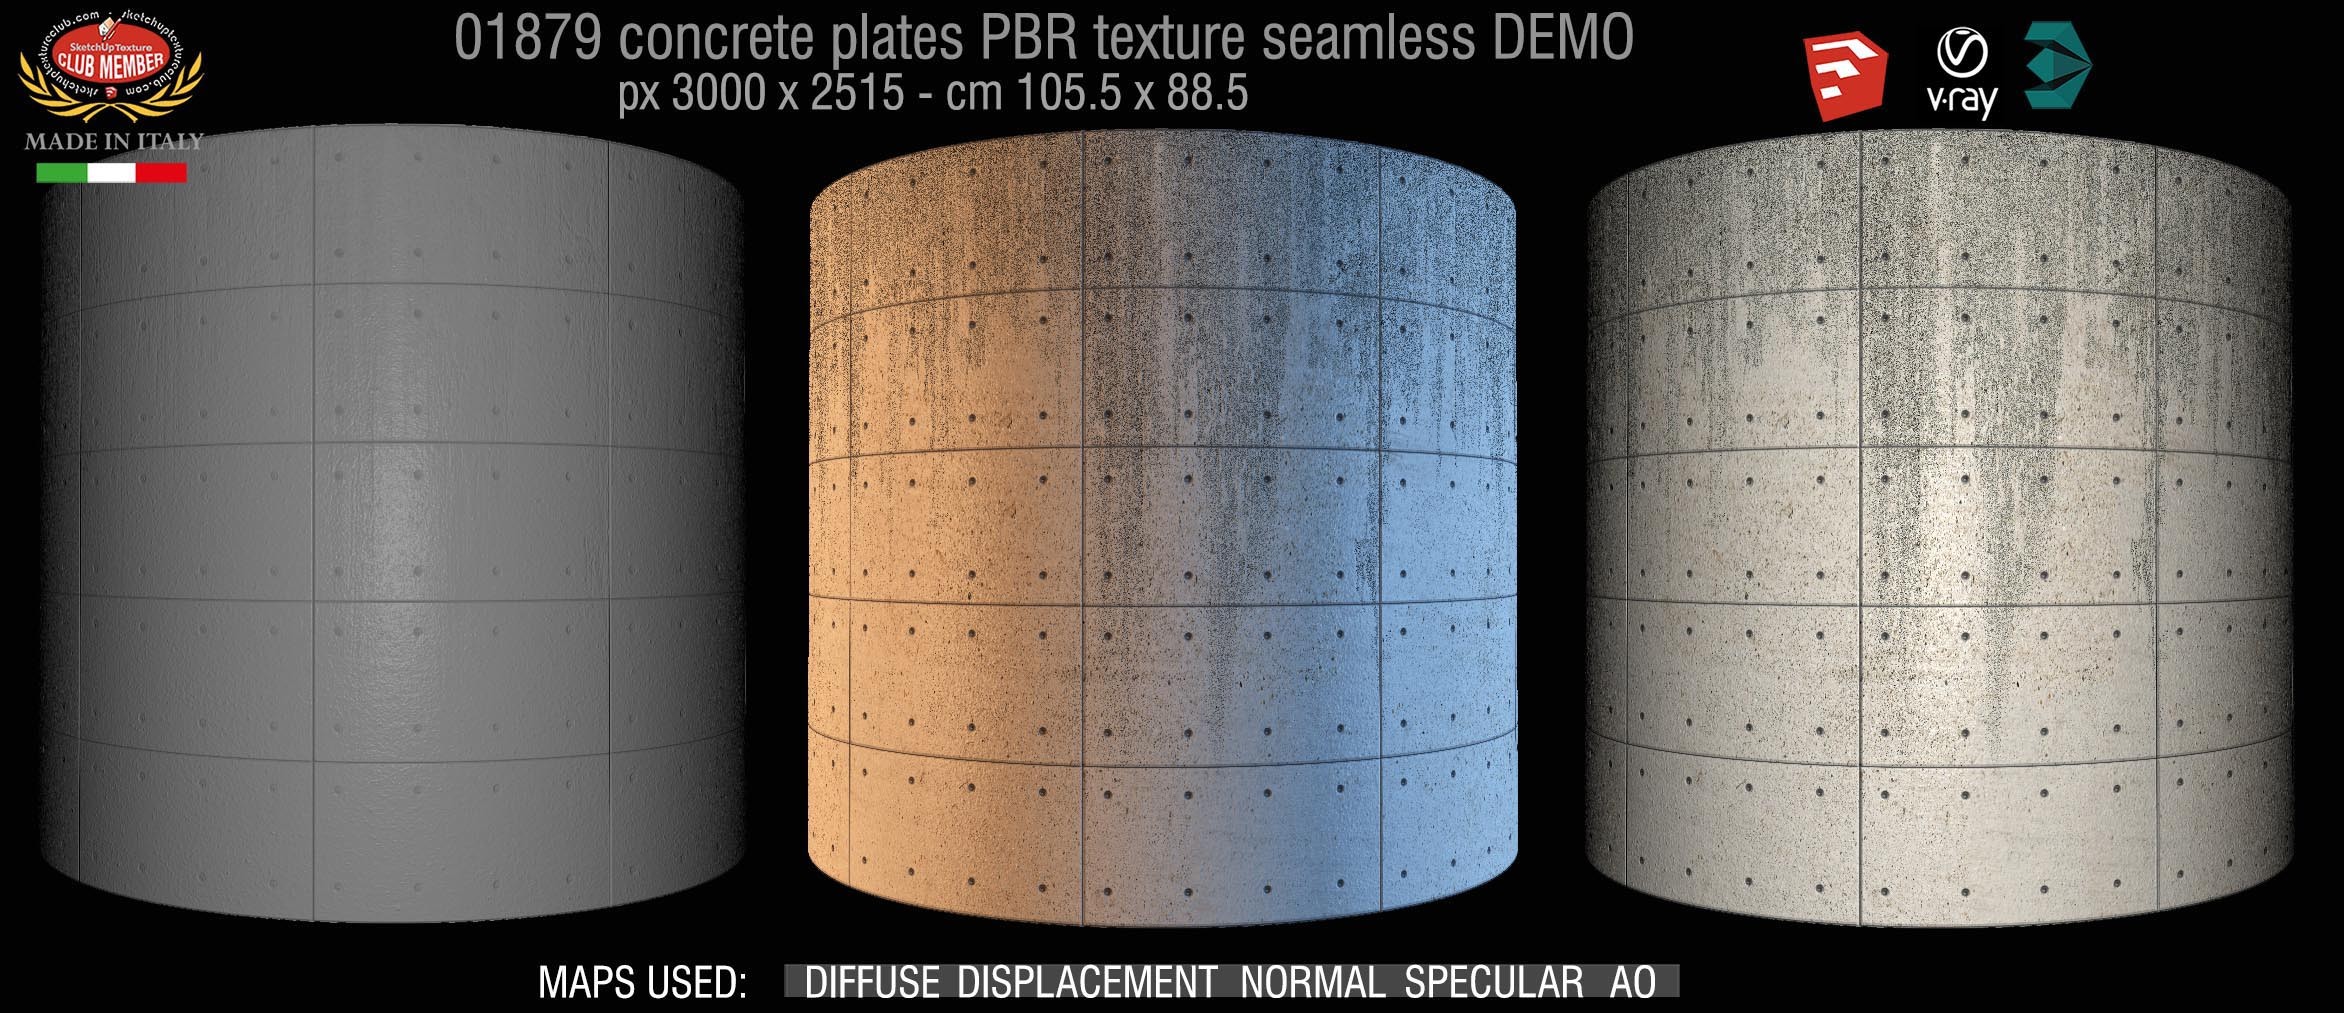 01879 tadao ando concrete plates PBR texture seamless DEMO